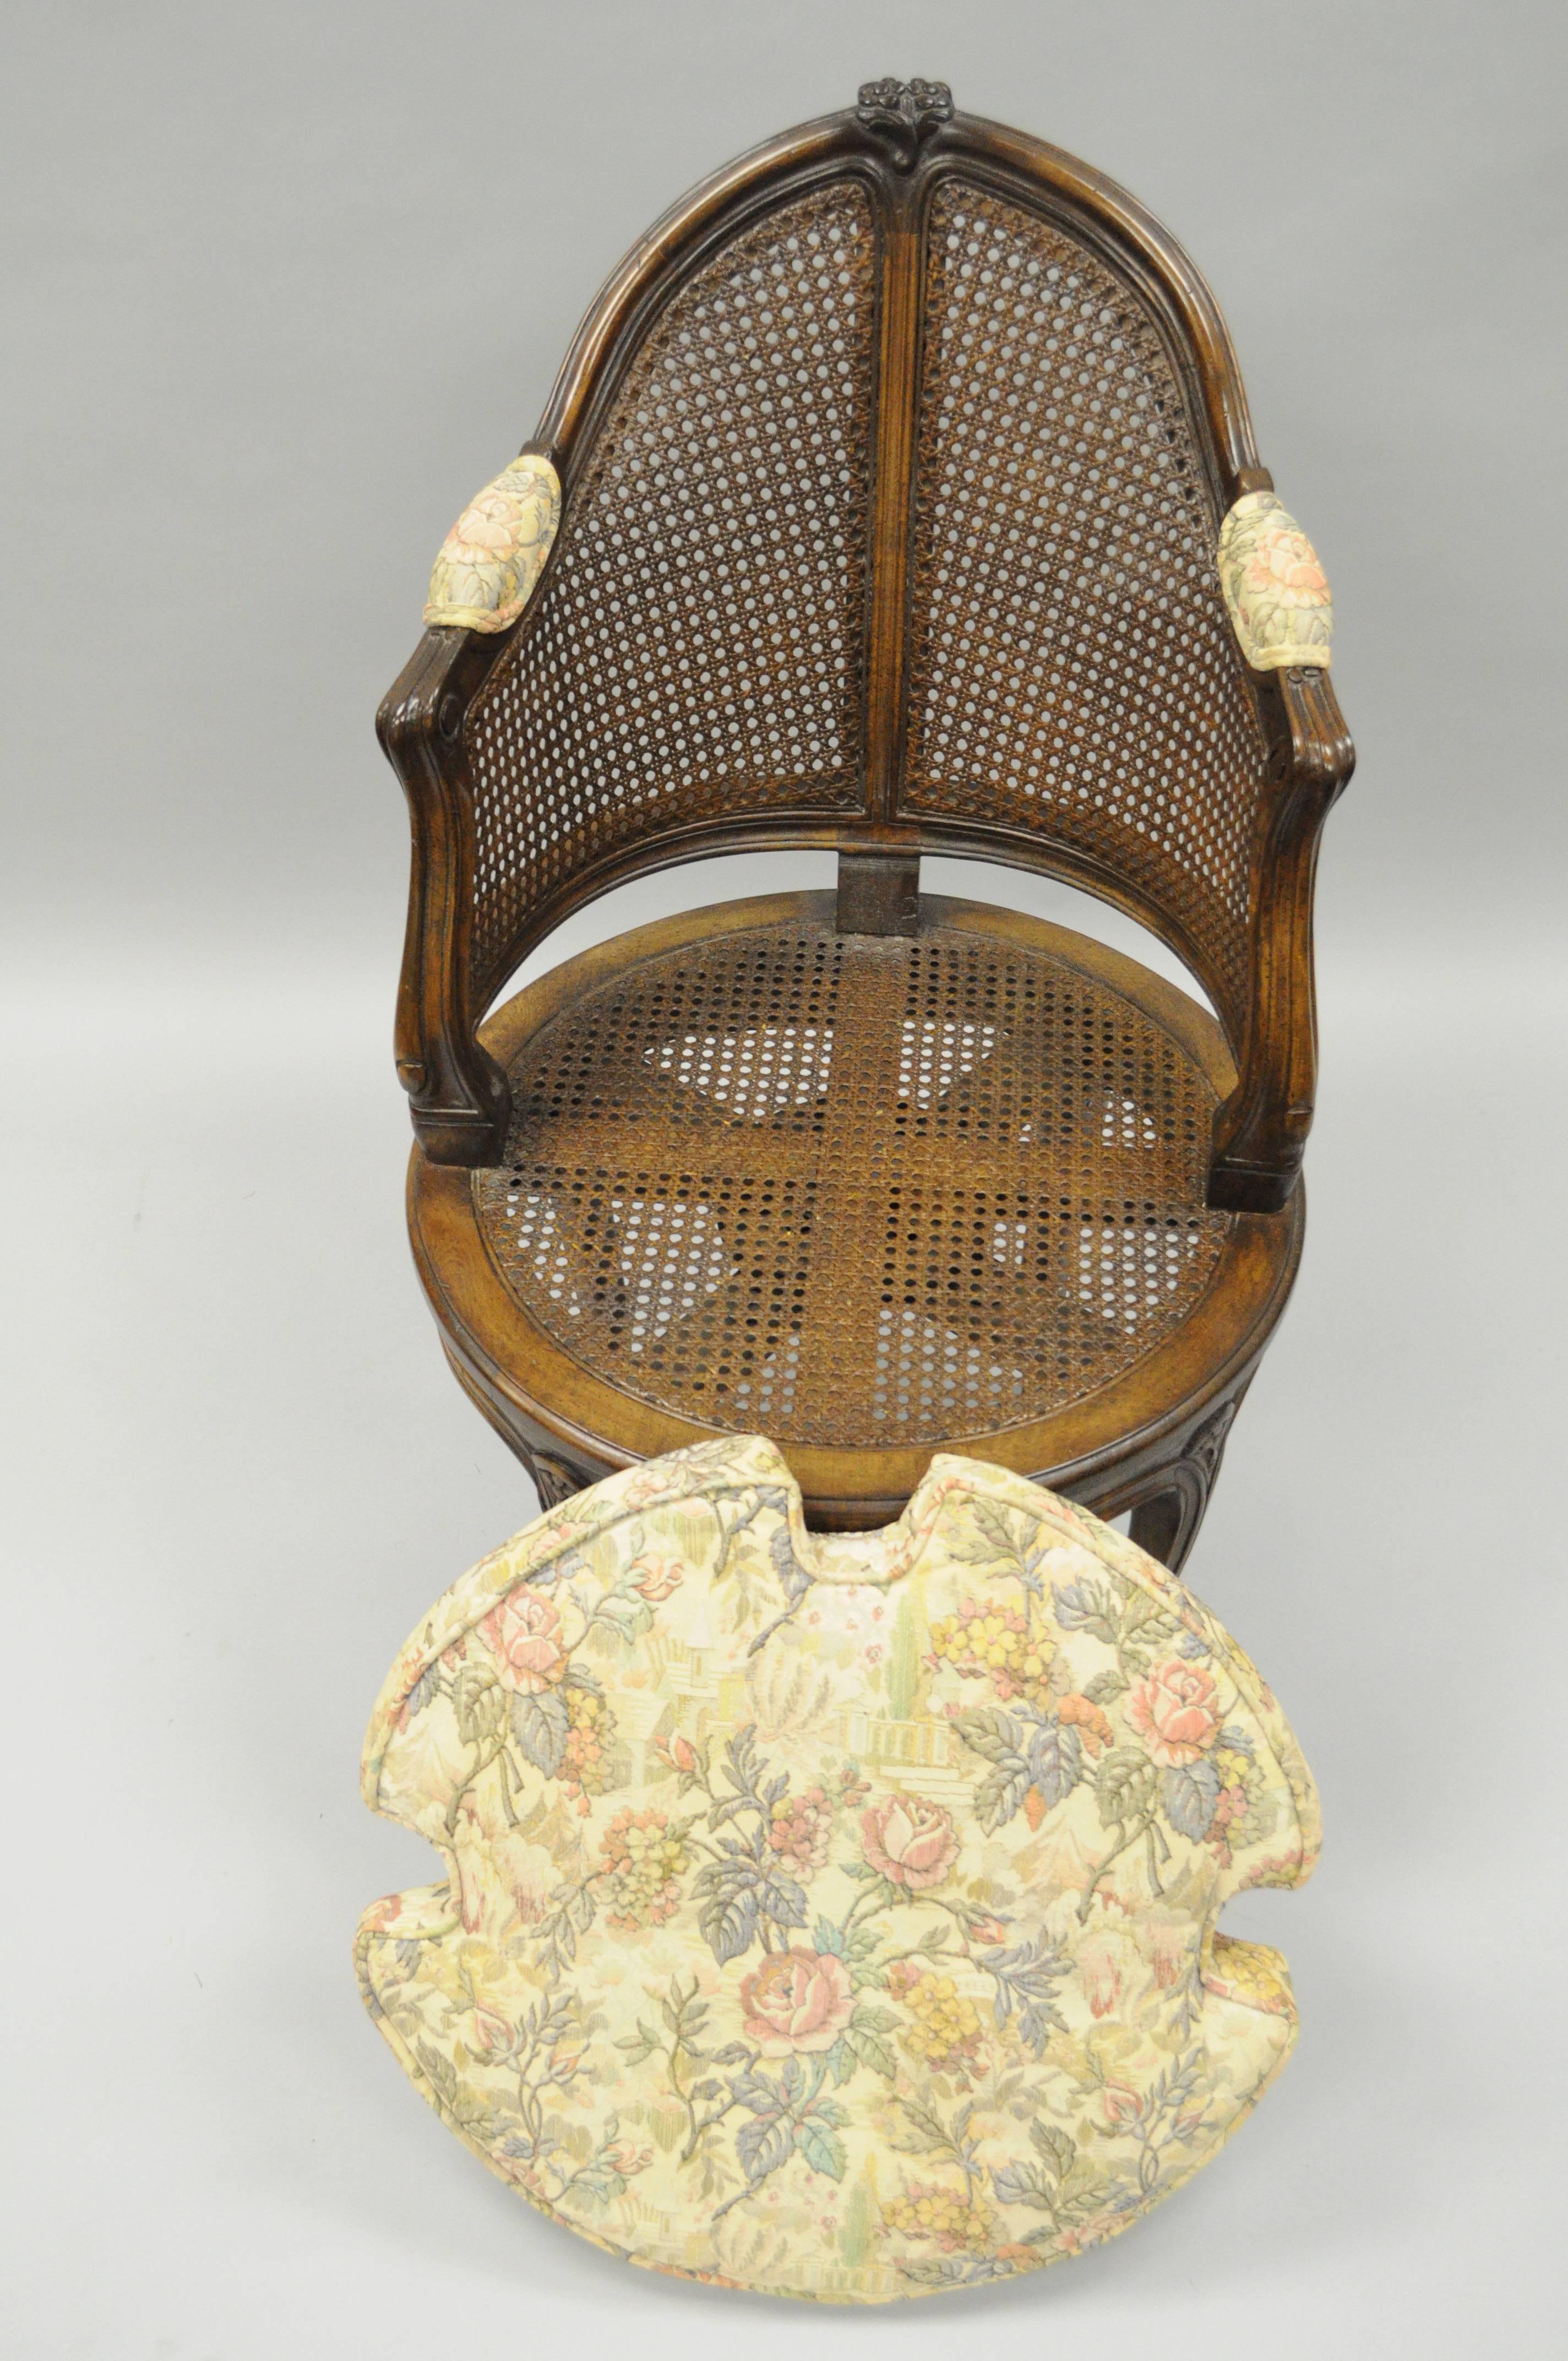 Français Fauteuil de coiffeuse pivotant de style Louis XV français à dossier canné, assise de boudoir en noyer